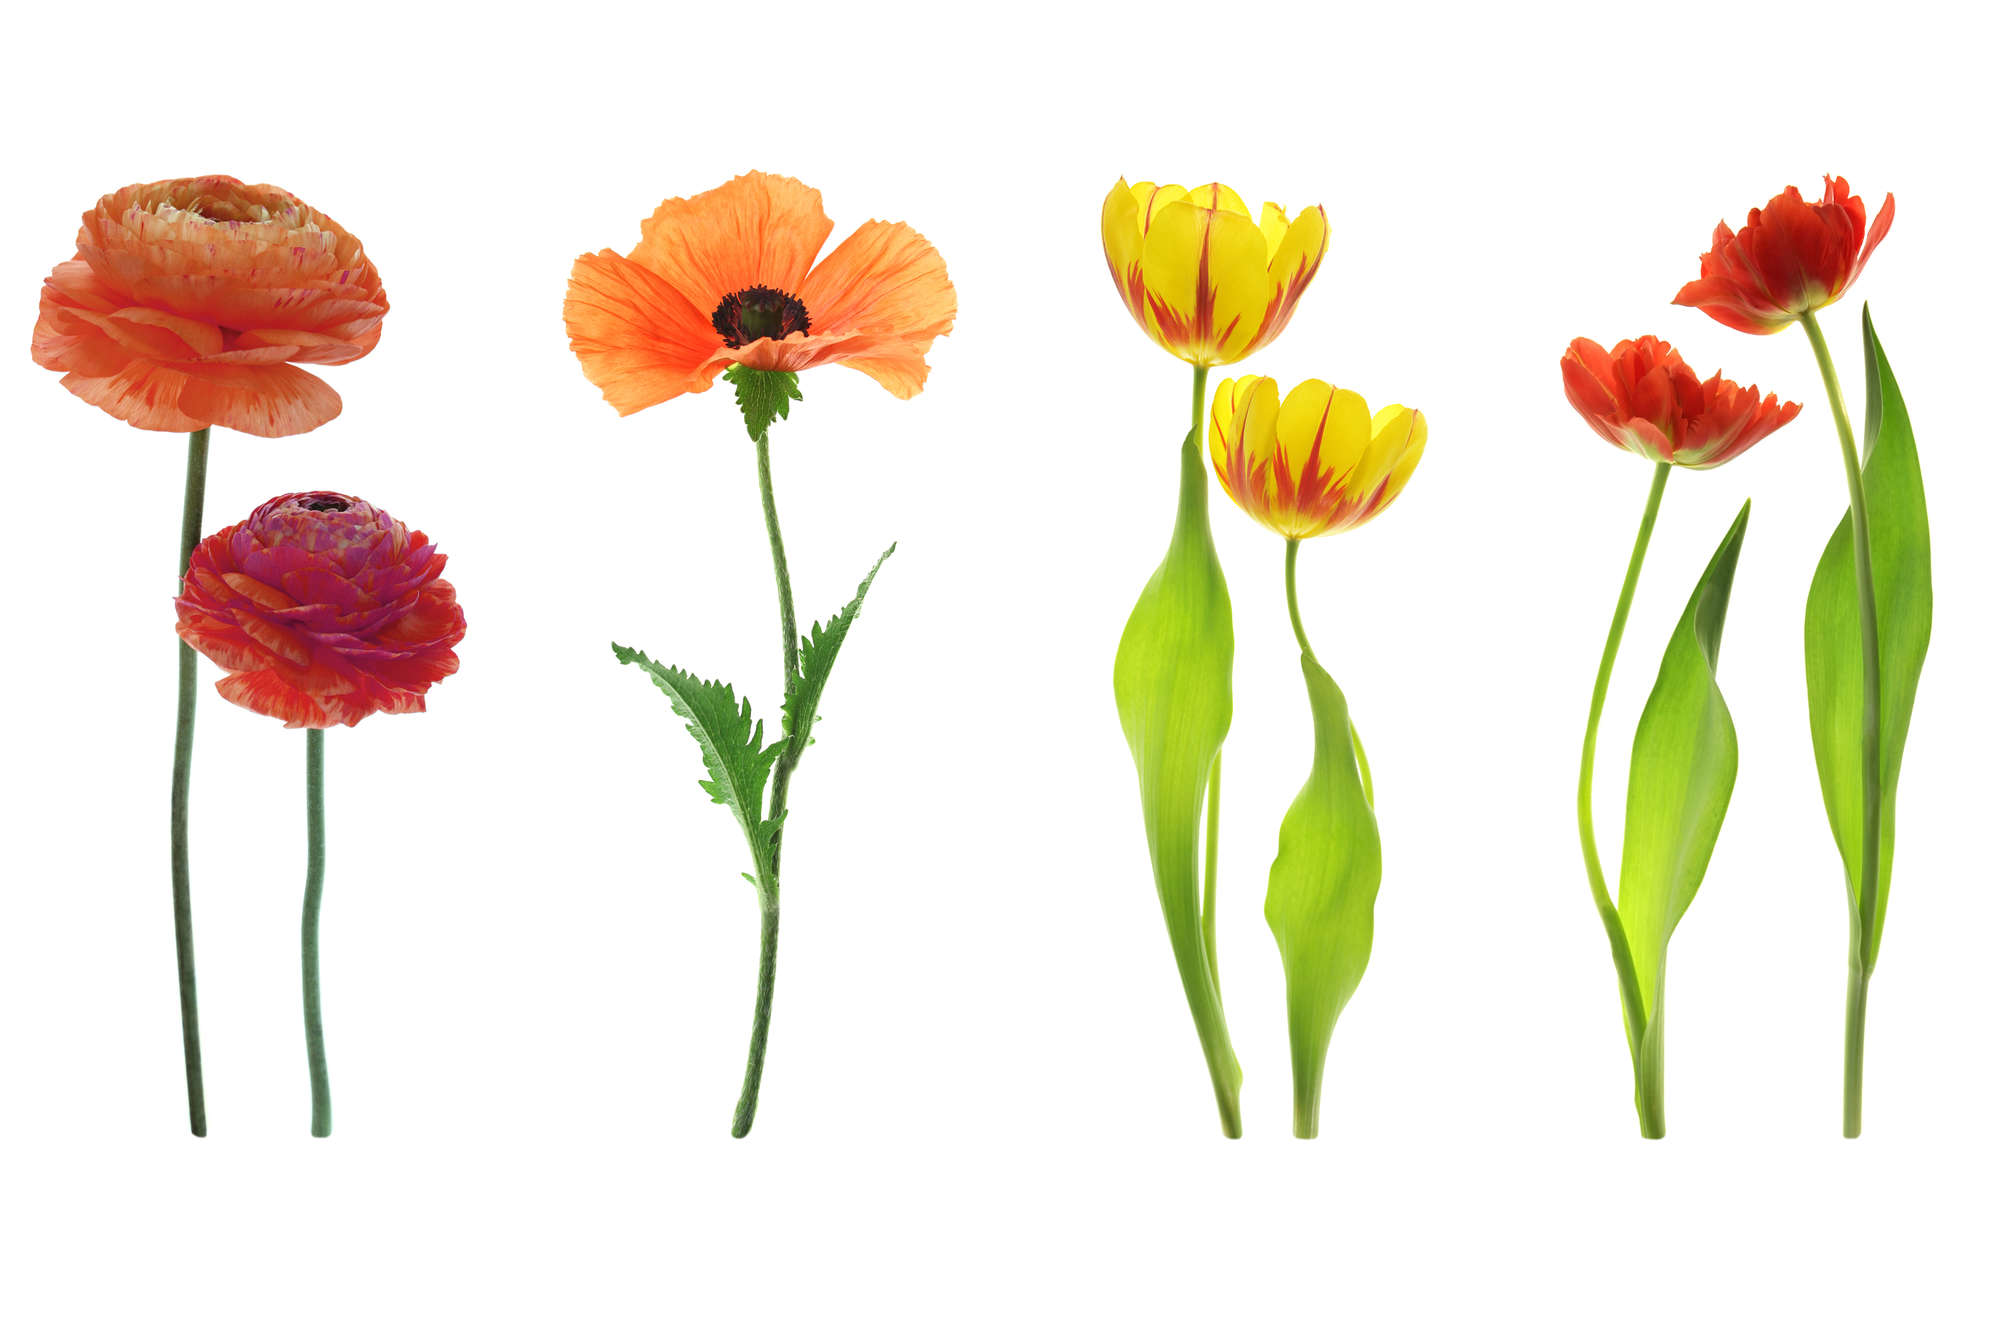             papiers peints à impression numérique variété de fleurs individuelles - intissé lisse mat
        